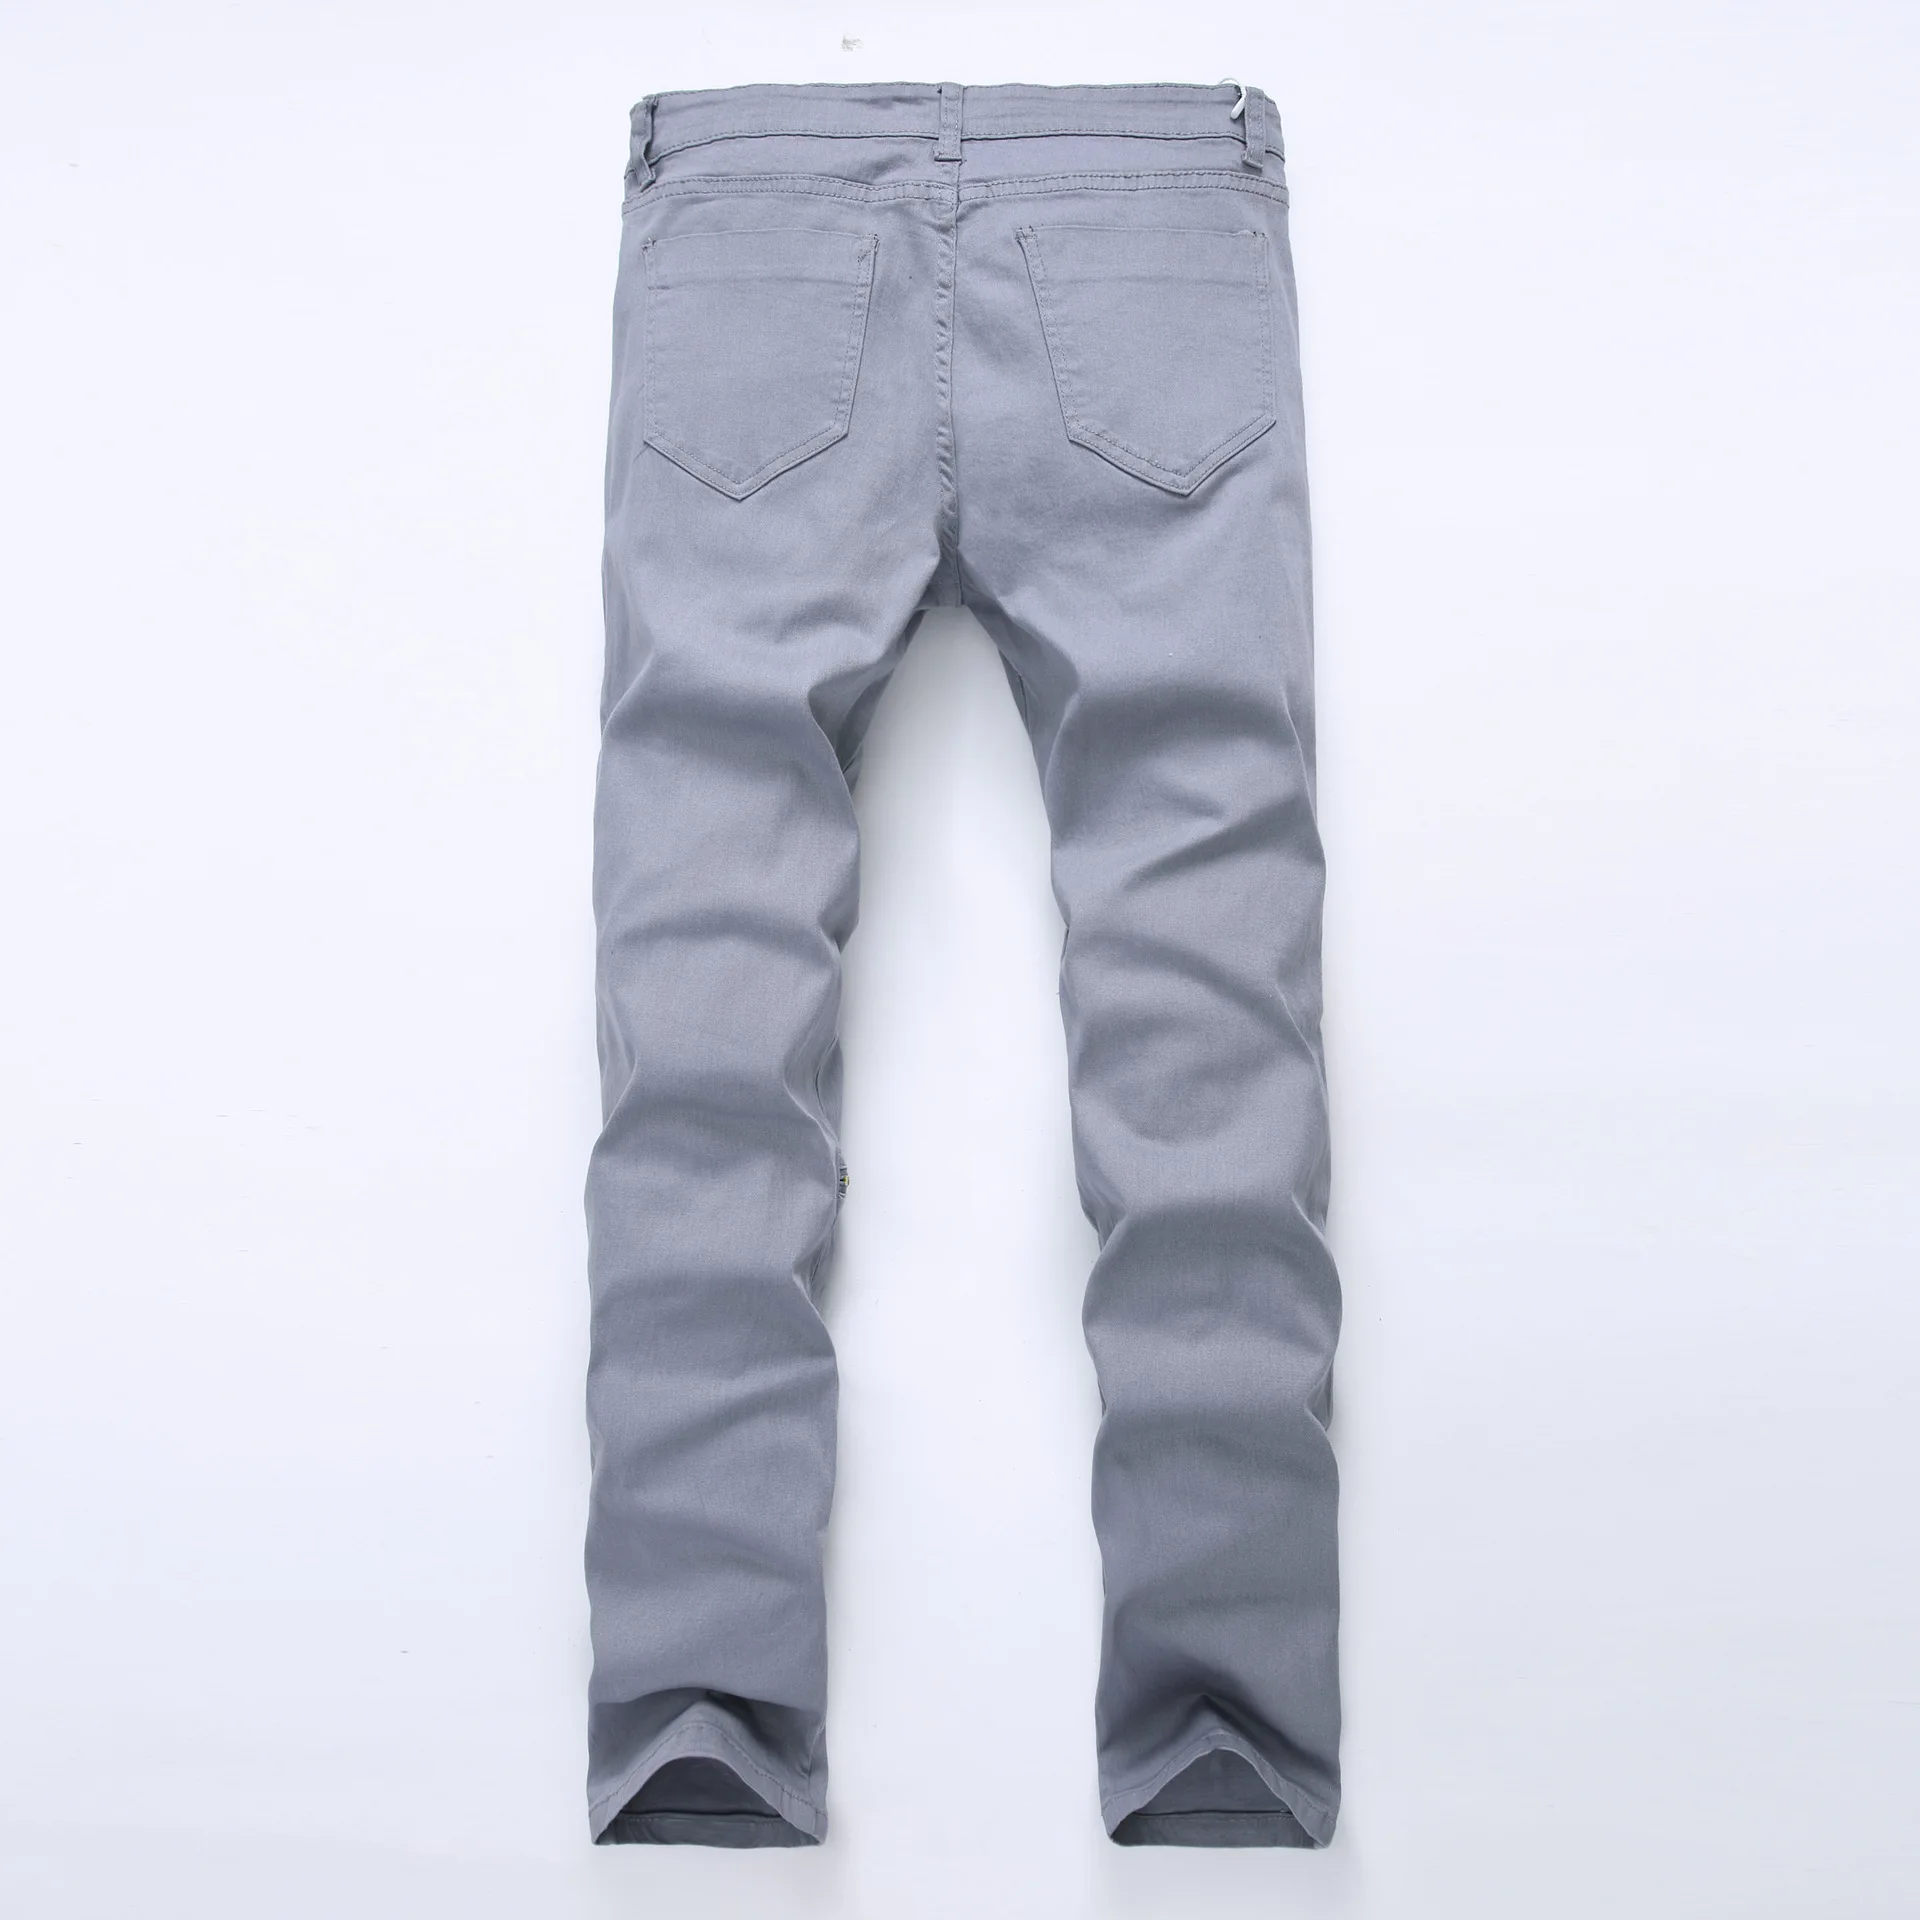 Белые рваные мужские джинсы с дырками, супероблегающие, Известный дизайнерский бренд, облегающие рваные джинсы, узкие джинсы на молнии